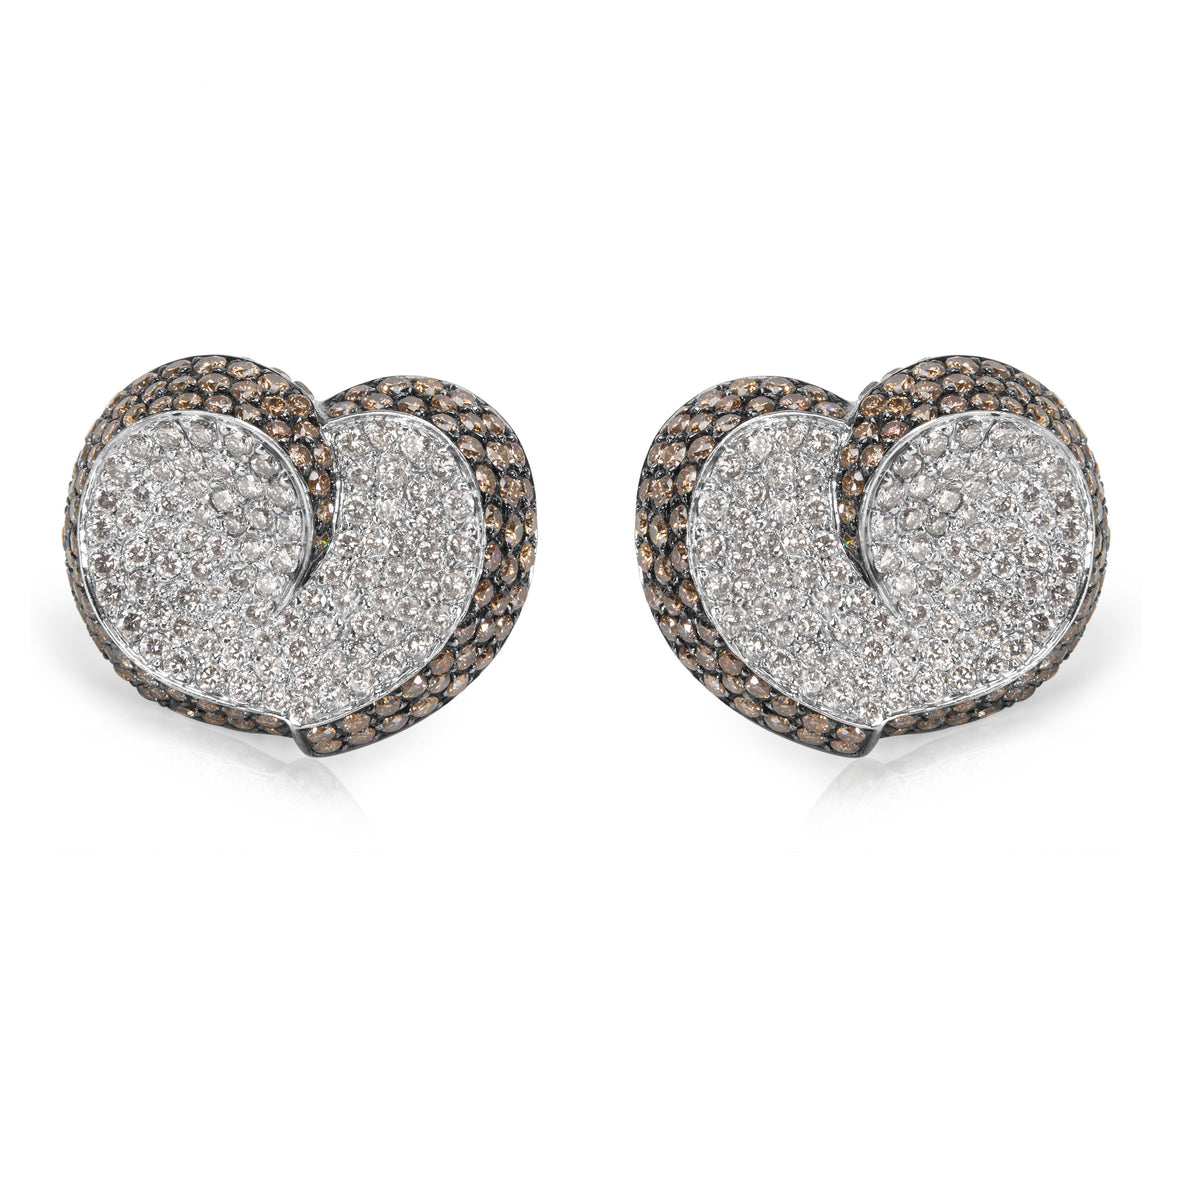 Brown & White Diamond Heart Earrings in 18KT White Gold 7.00 ctw